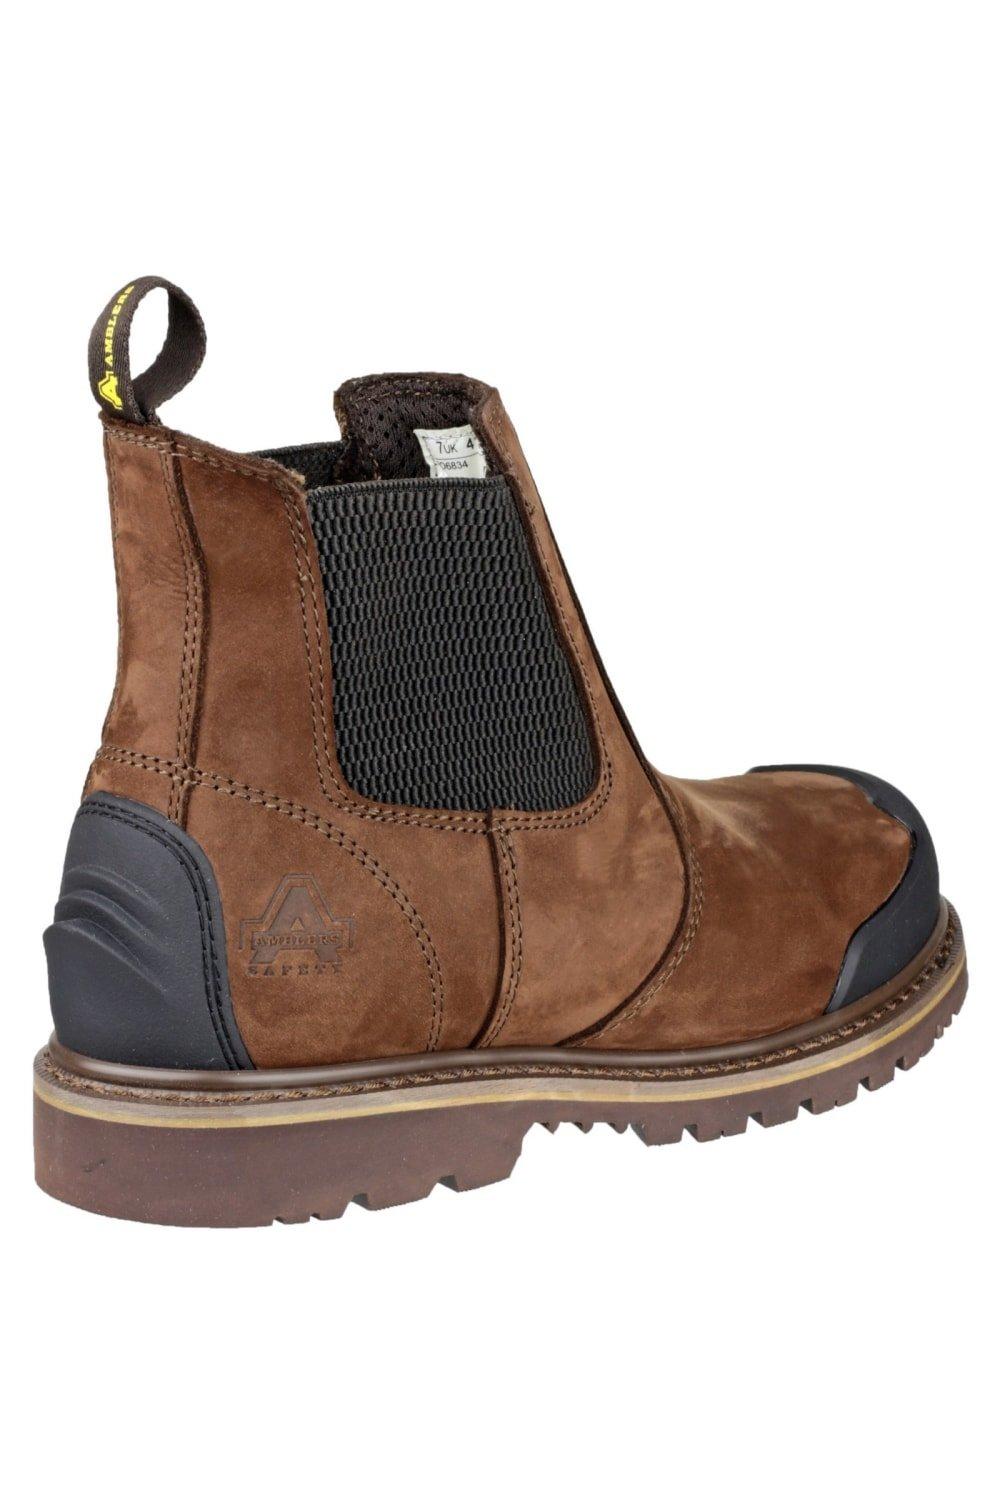 цена Защитные ботинки FS225 Amblers, коричневый